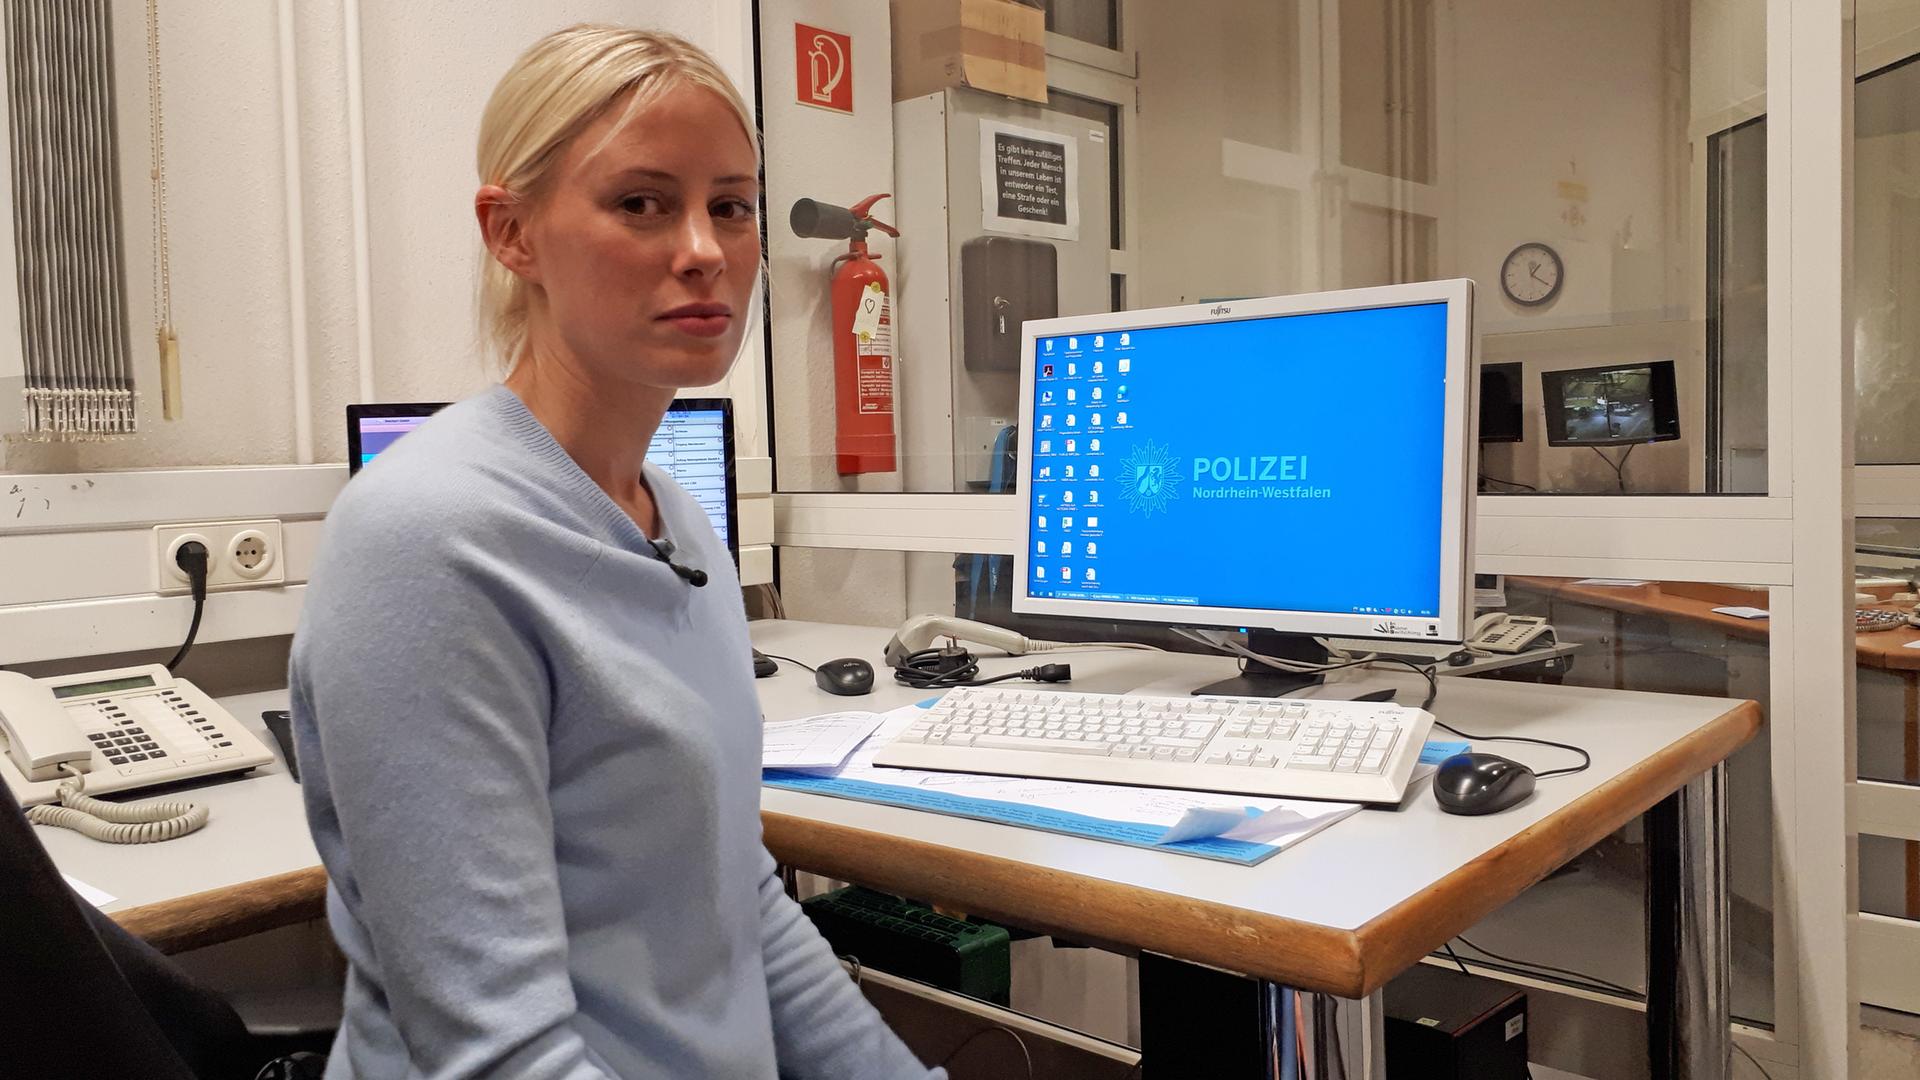 Jana L. sitzt auf einem Schreibtischstuhl, der Kamera zugewandt, hinter ihr ein Computerbildschirm mit einem Desktop-Hintergrund, auf dem "Polizei Nordrhein-Westfalen" steht.